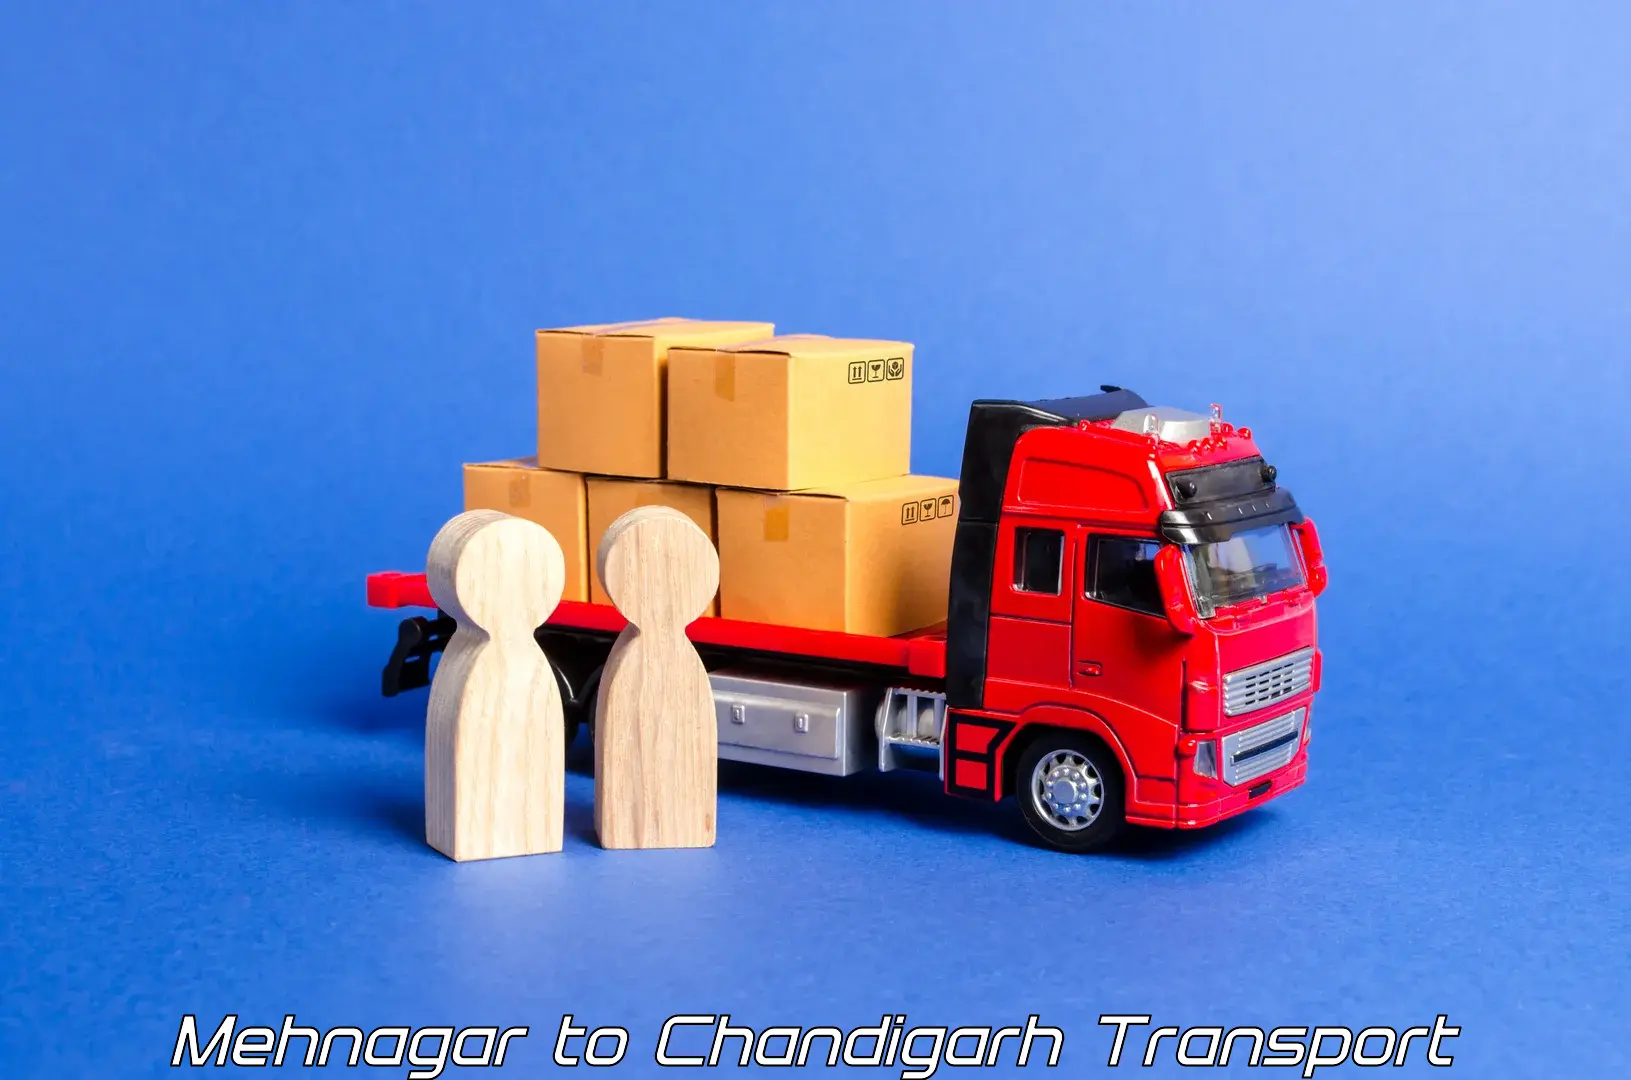 Daily transport service Mehnagar to Chandigarh